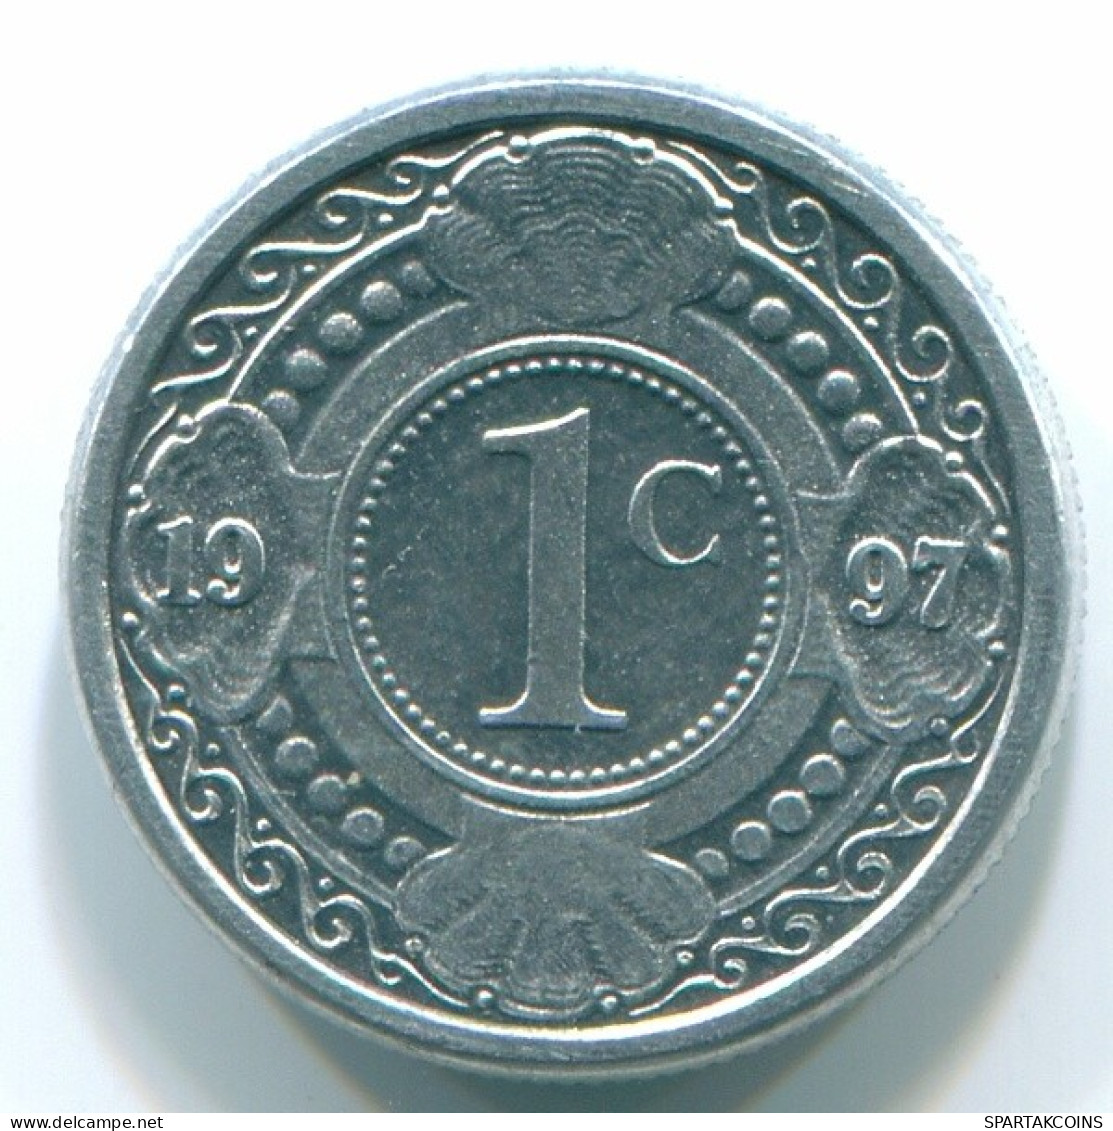 1 CENT 1996 NETHERLANDS ANTILLES Aluminium Colonial Coin #S13147.U.A - Nederlandse Antillen